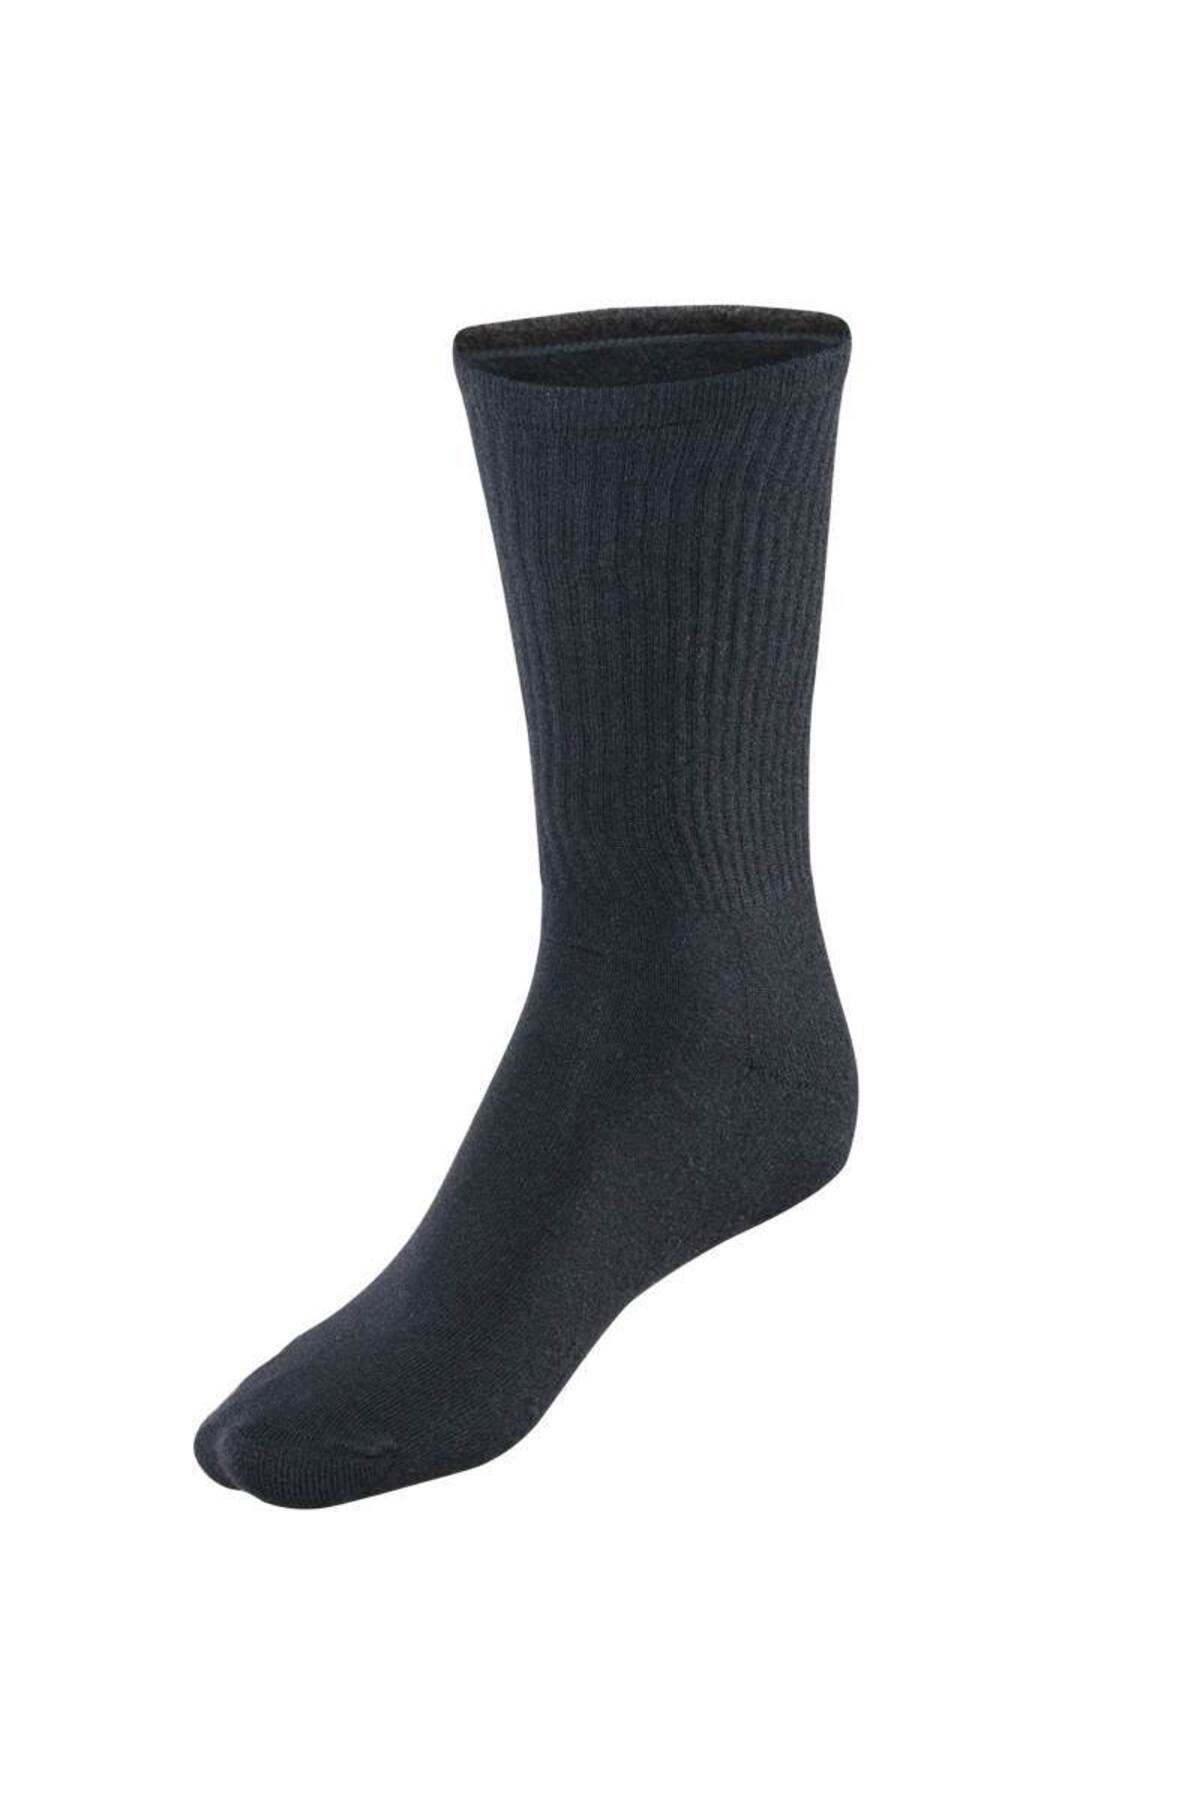 Blackspade 9274 Siyah Unisex Termal Uzun Çorap